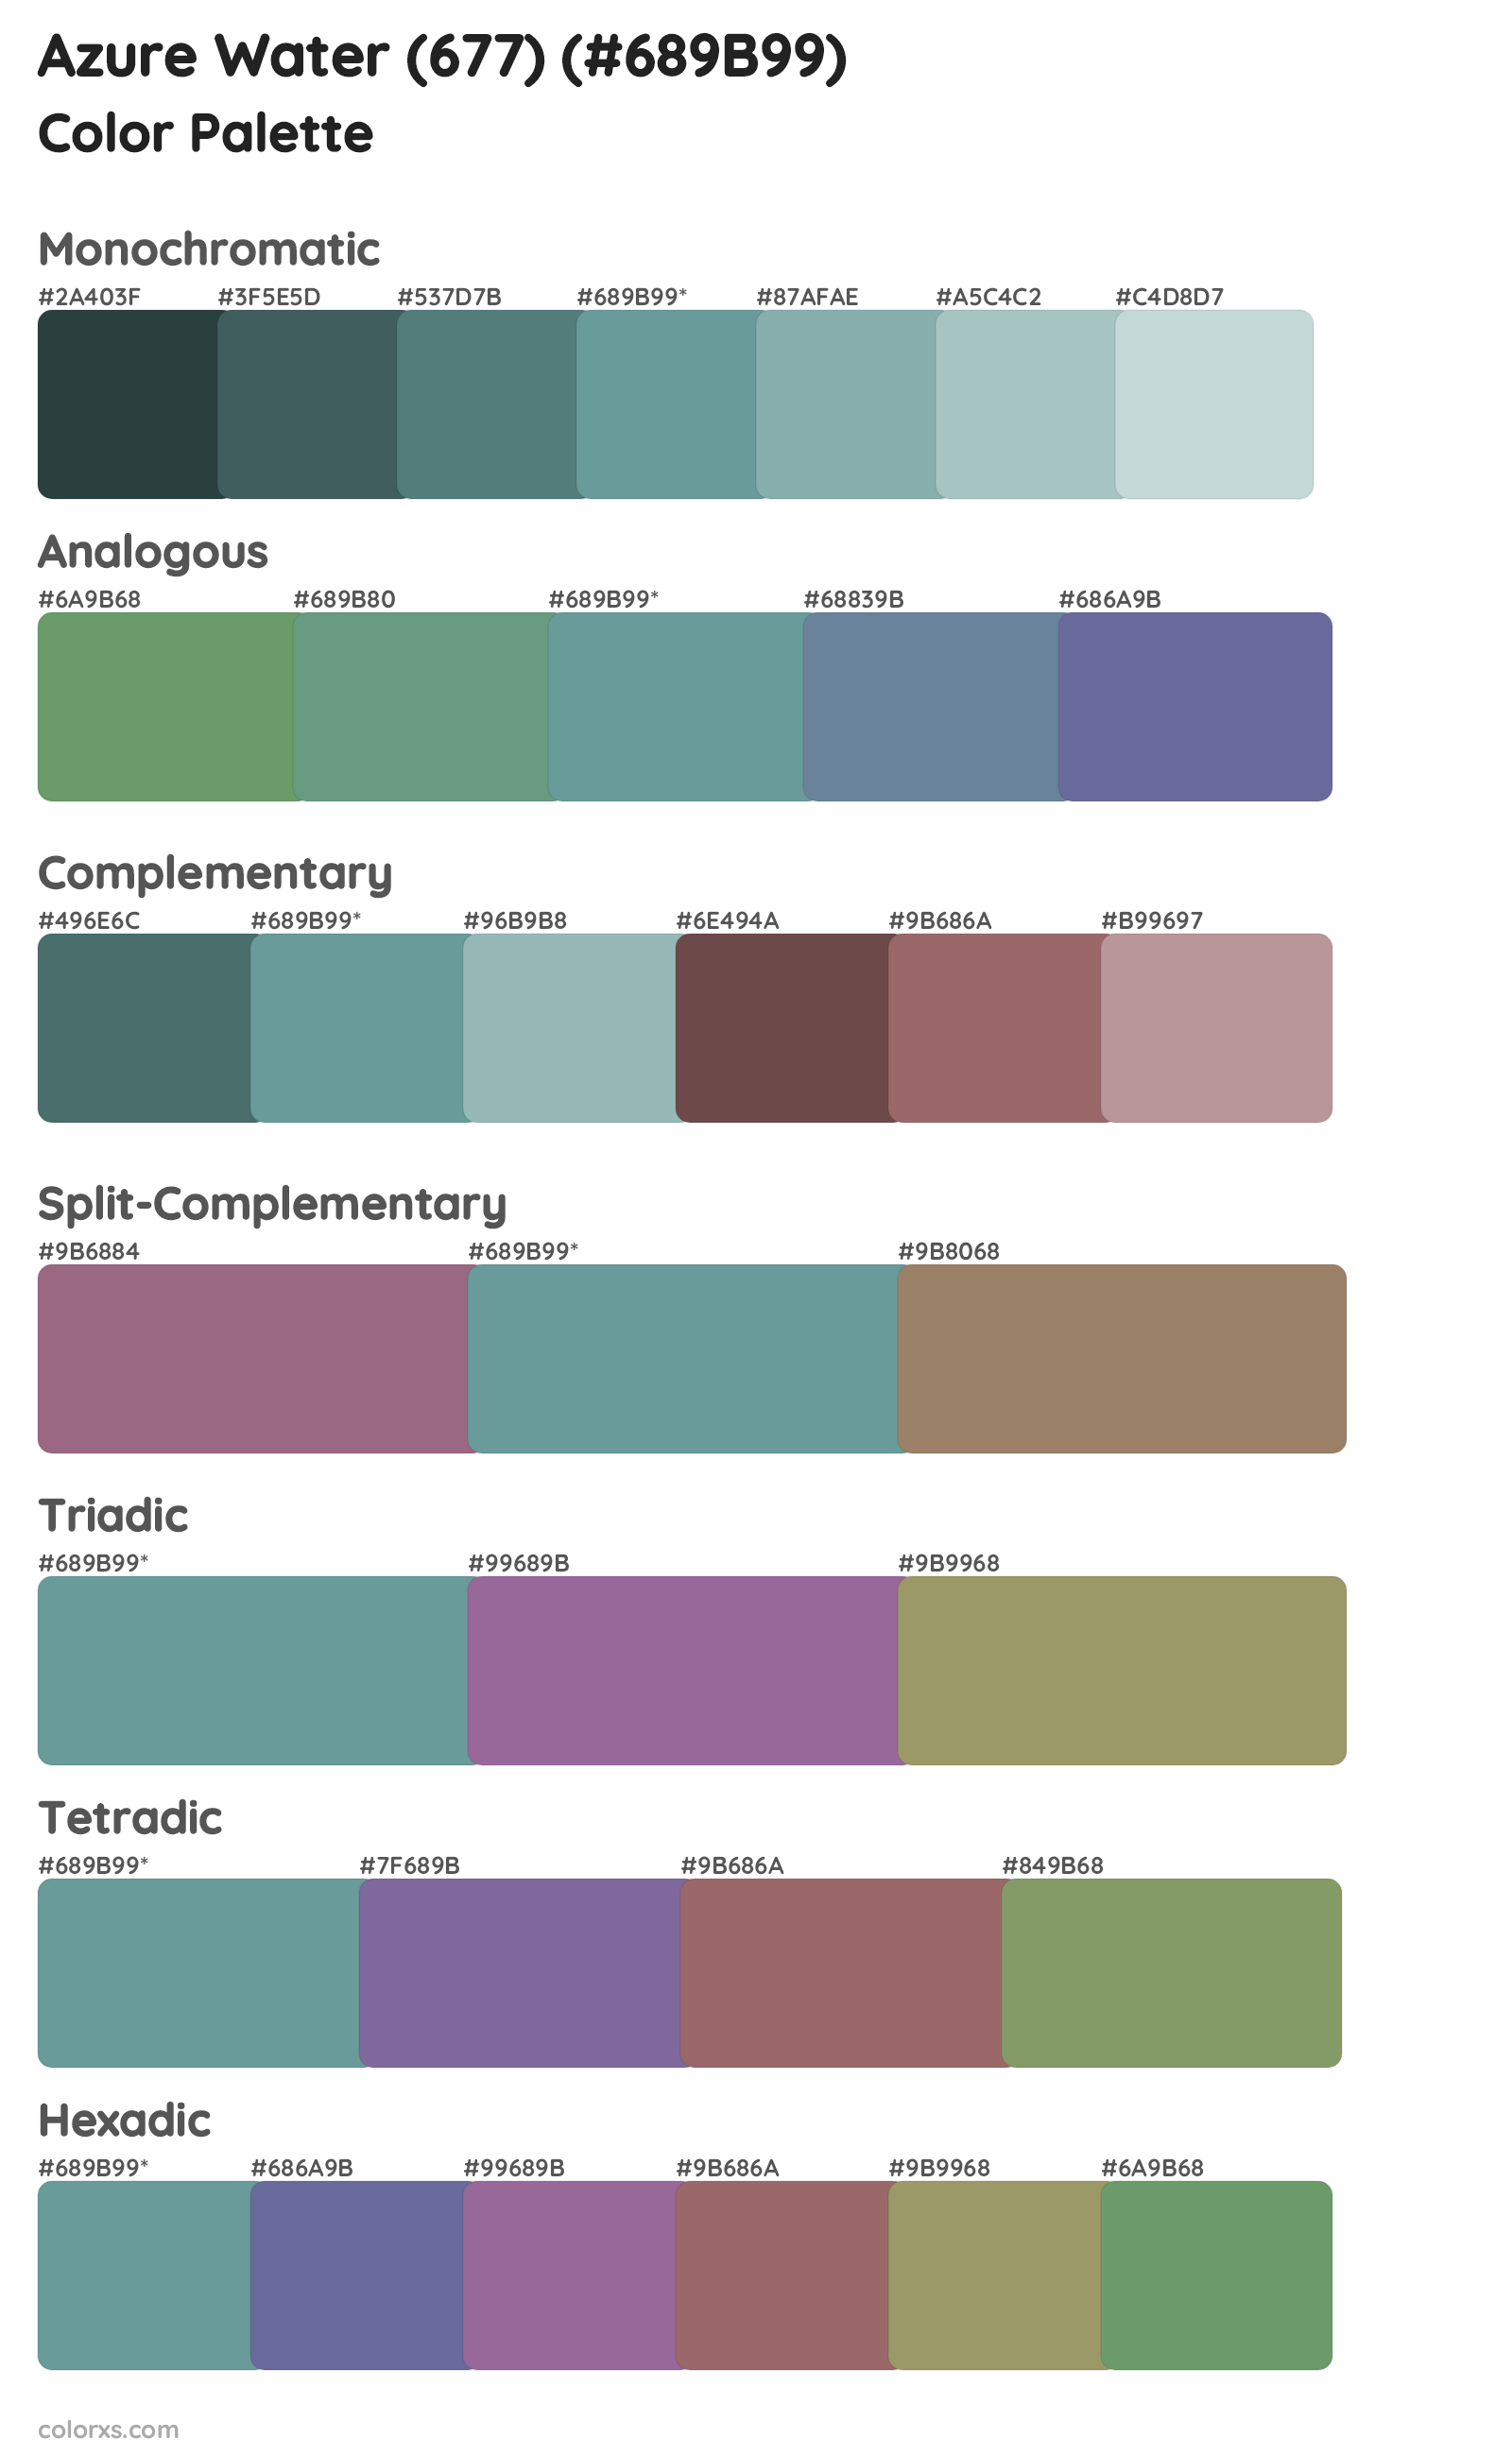 Azure Water (677) Color Scheme Palettes